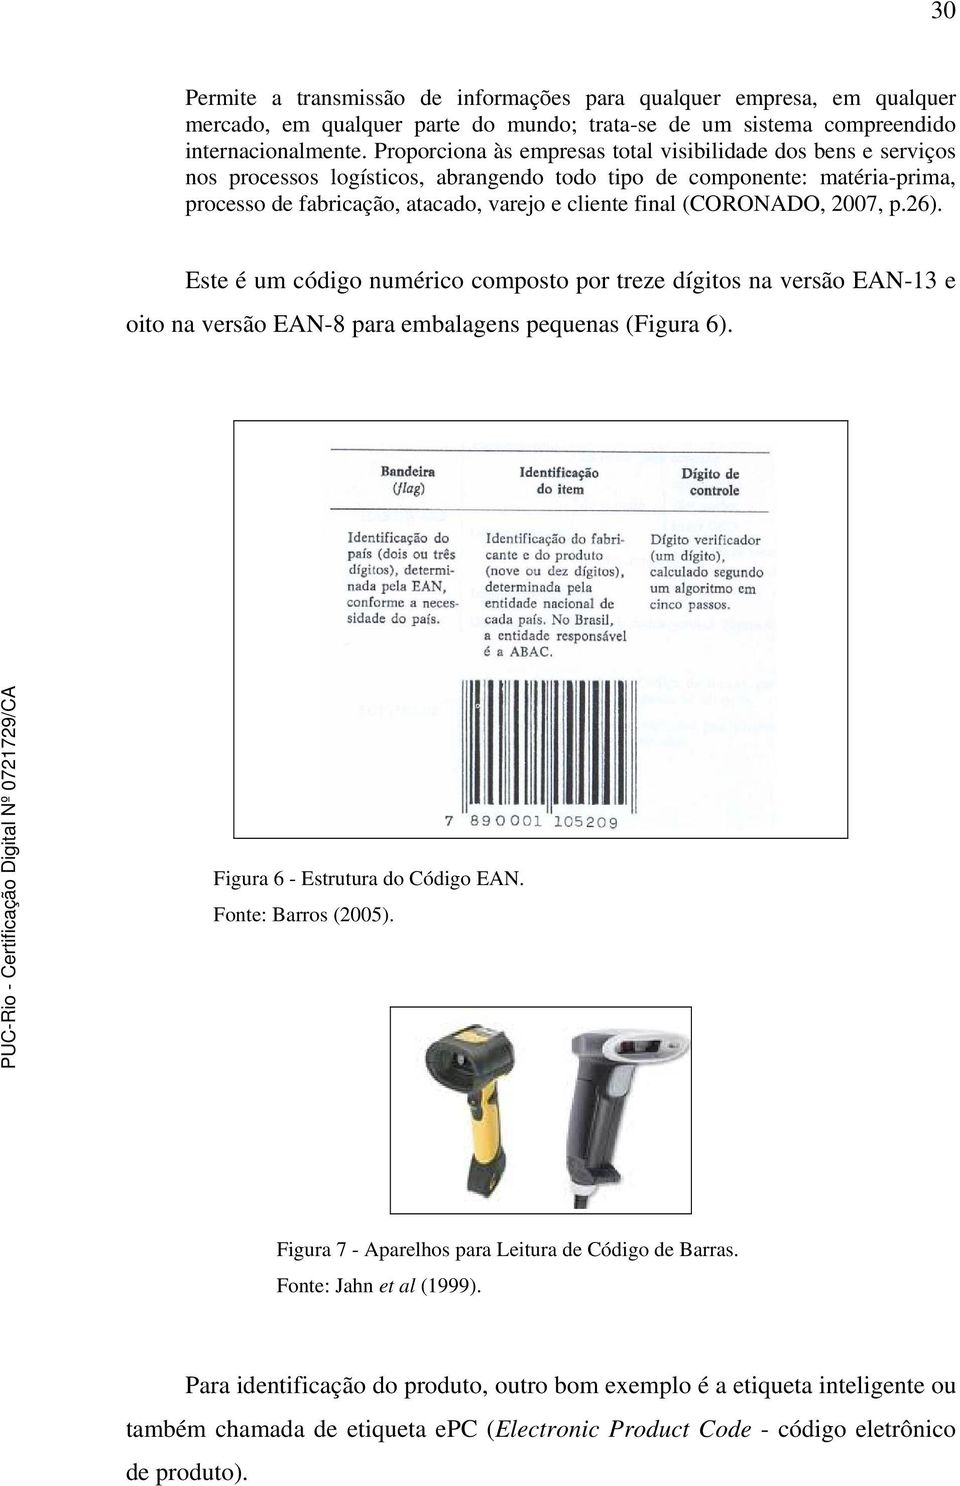 (CORONADO, 2007, p.26). Este é um código numérico composto por treze dígitos na versão EAN-13 e oito na versão EAN-8 para embalagens pequenas (Figura 6). Figura 6 - Estrutura do Código EAN.